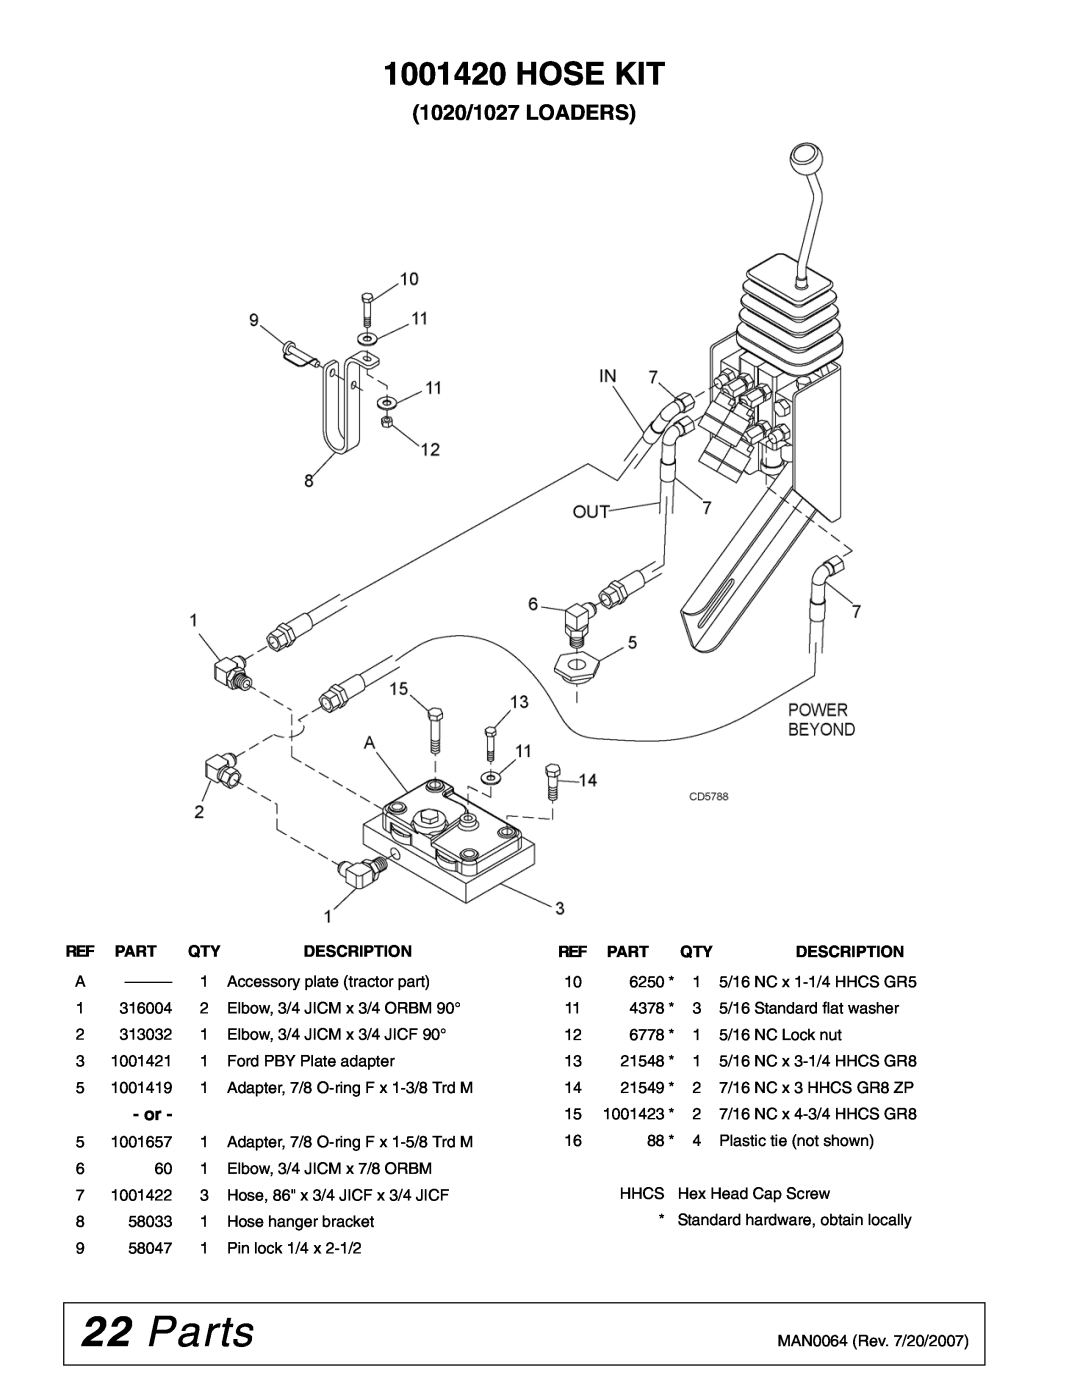 Woods Equipment 111877 manual Parts, 1020/1027 LOADERS, Hose Kit, Ref Part Qty, Description 